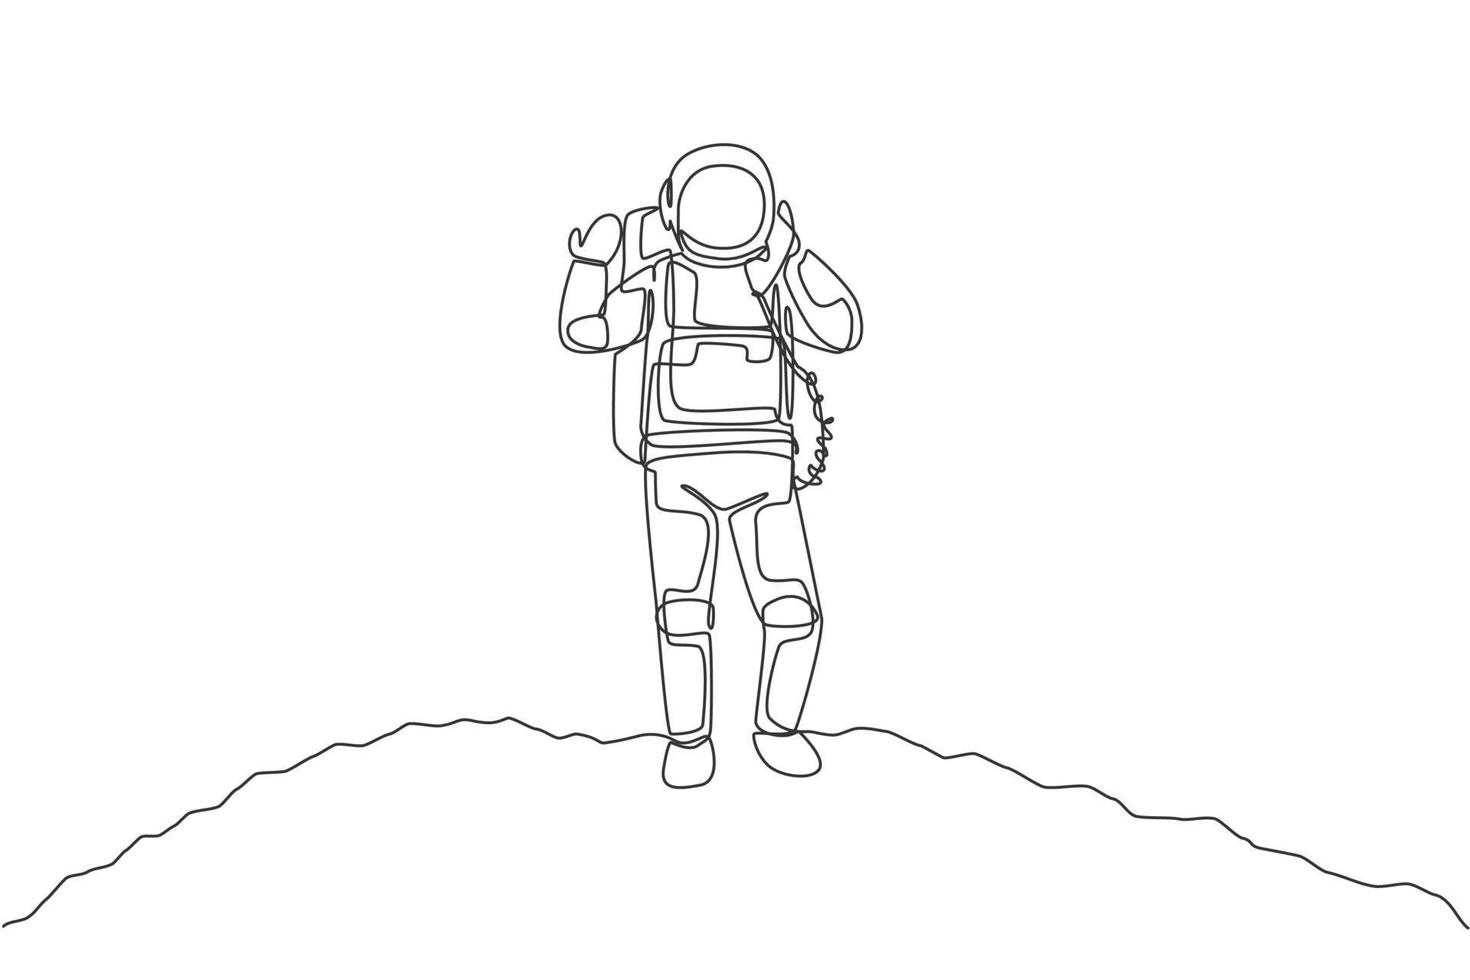 disegno a linea continua dell'astronauta sulla superficie lunare che chiama con il satellite del telefono. ufficio commerciale con il concetto di spazio cosmico della galassia. illustrazione vettoriale di design grafico di una linea alla moda di disegno